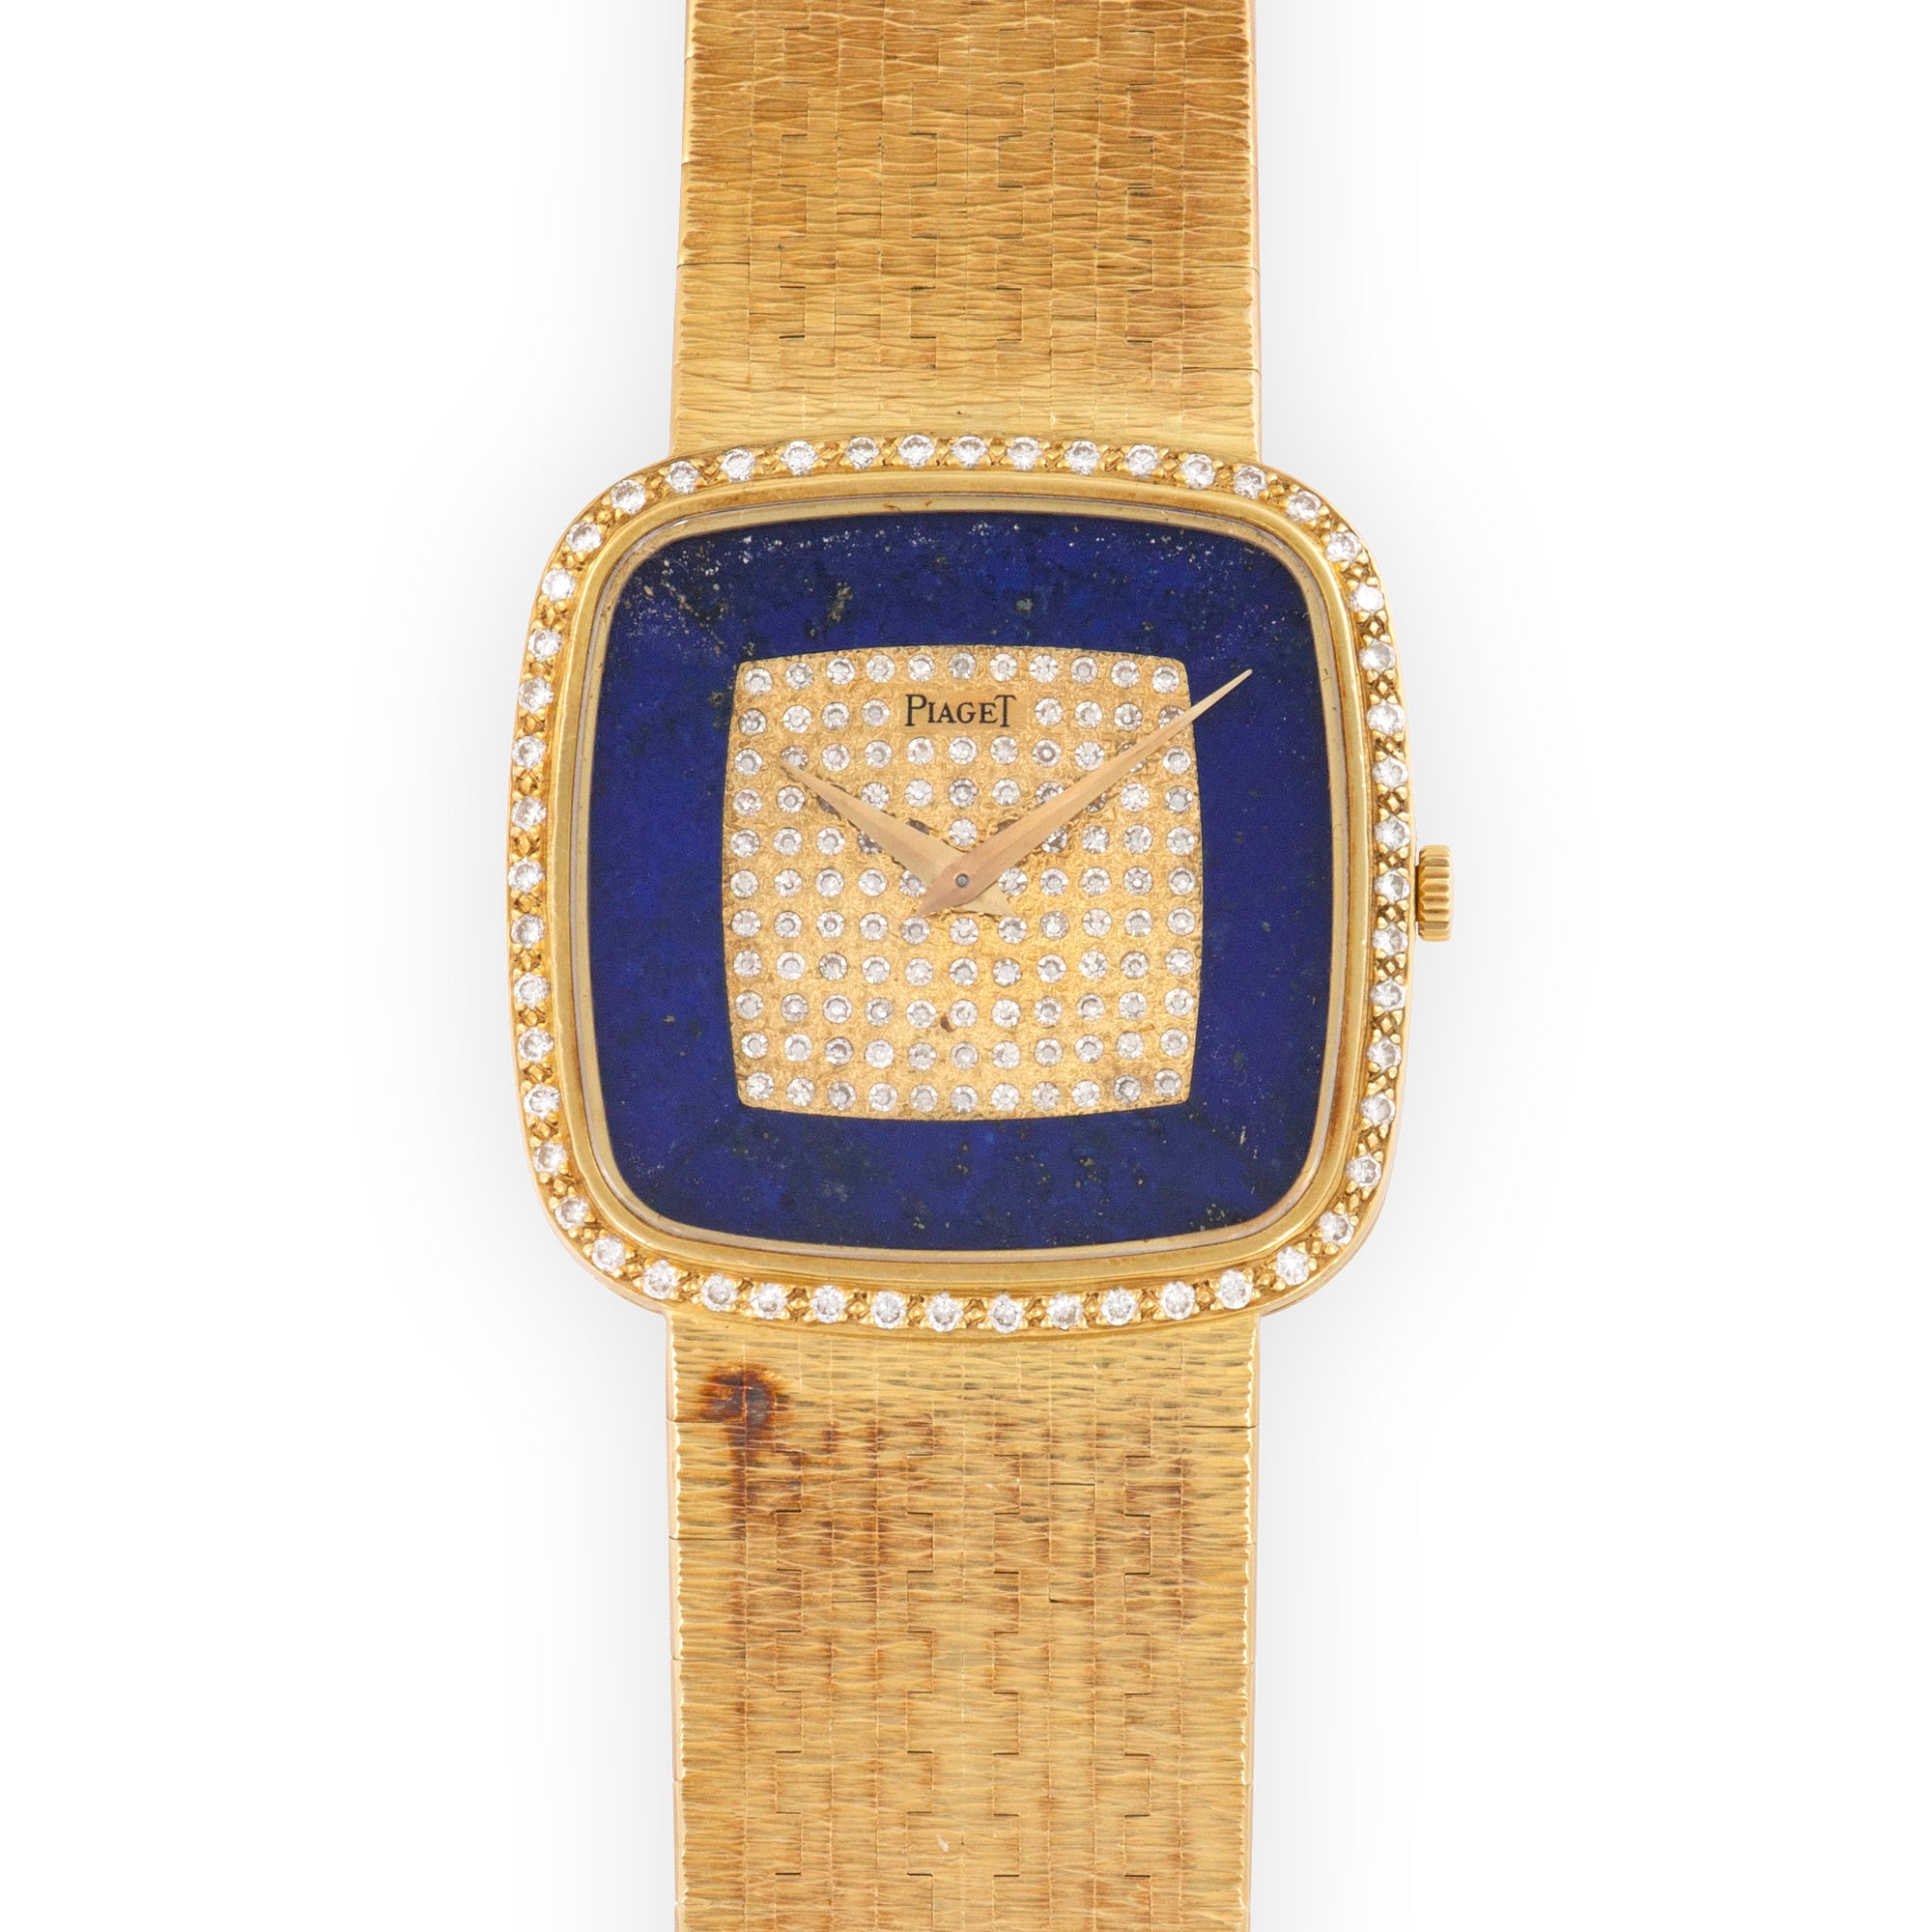 Piaget - Piaget Yellow Gold Diamond &amp; Lapis Watch - The Keystone Watches